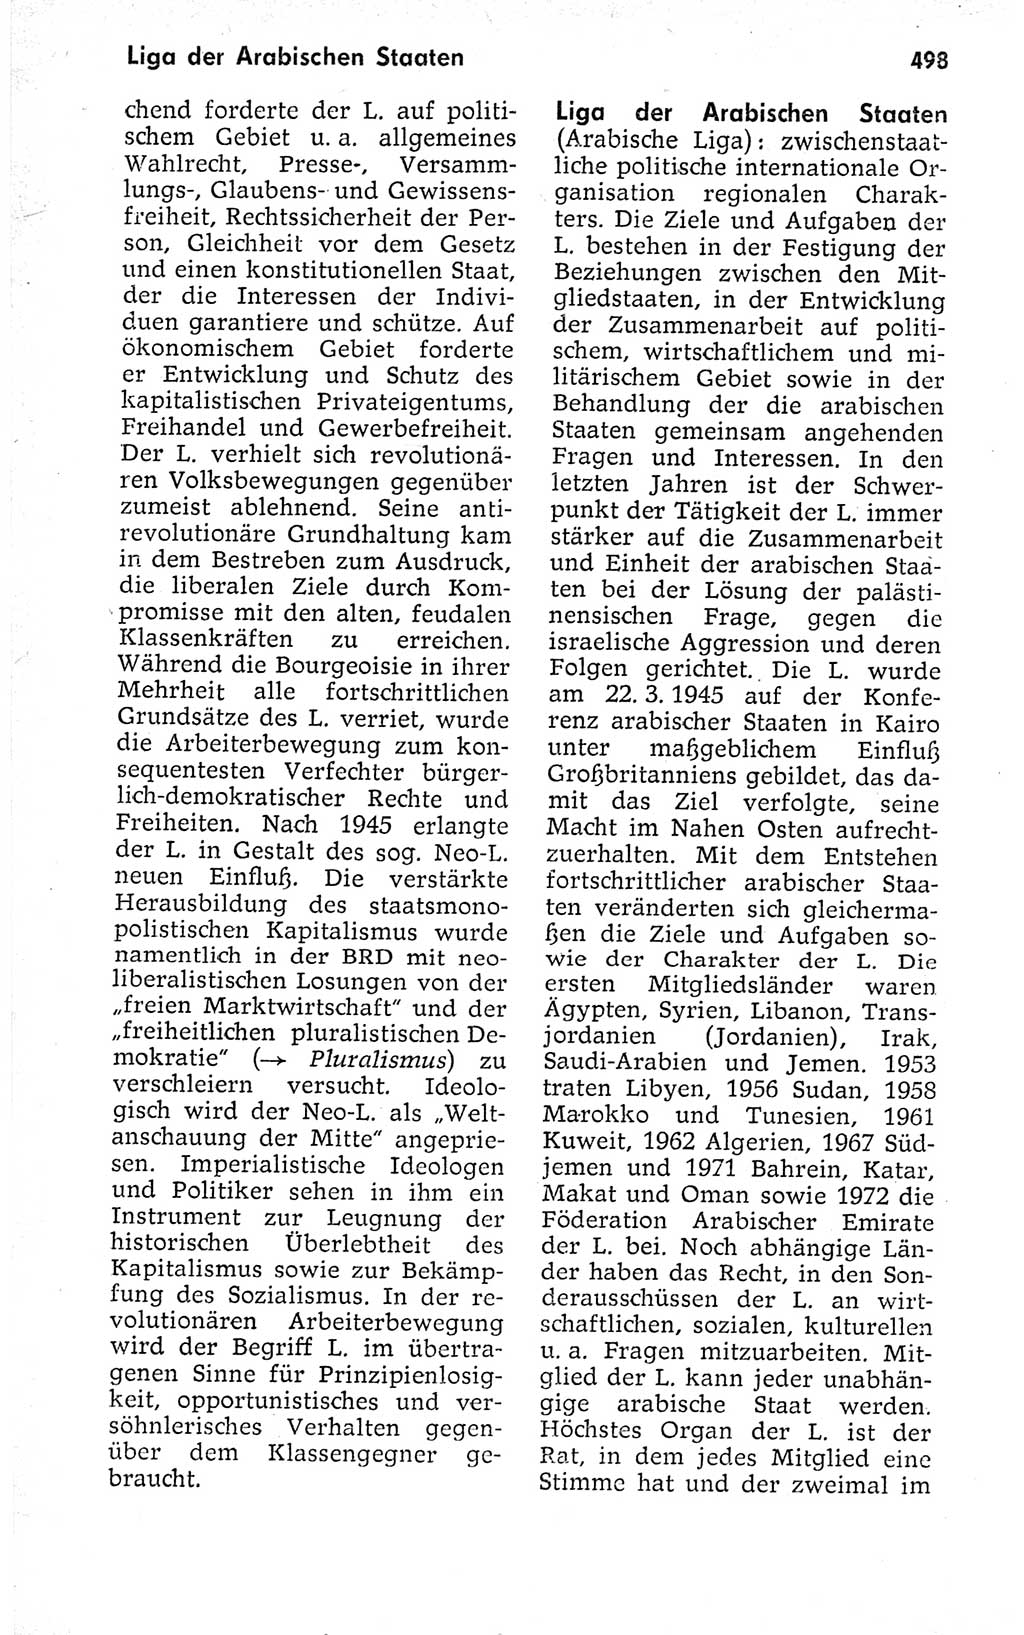 Kleines politisches Wörterbuch [Deutsche Demokratische Republik (DDR)] 1973, Seite 498 (Kl. pol. Wb. DDR 1973, S. 498)